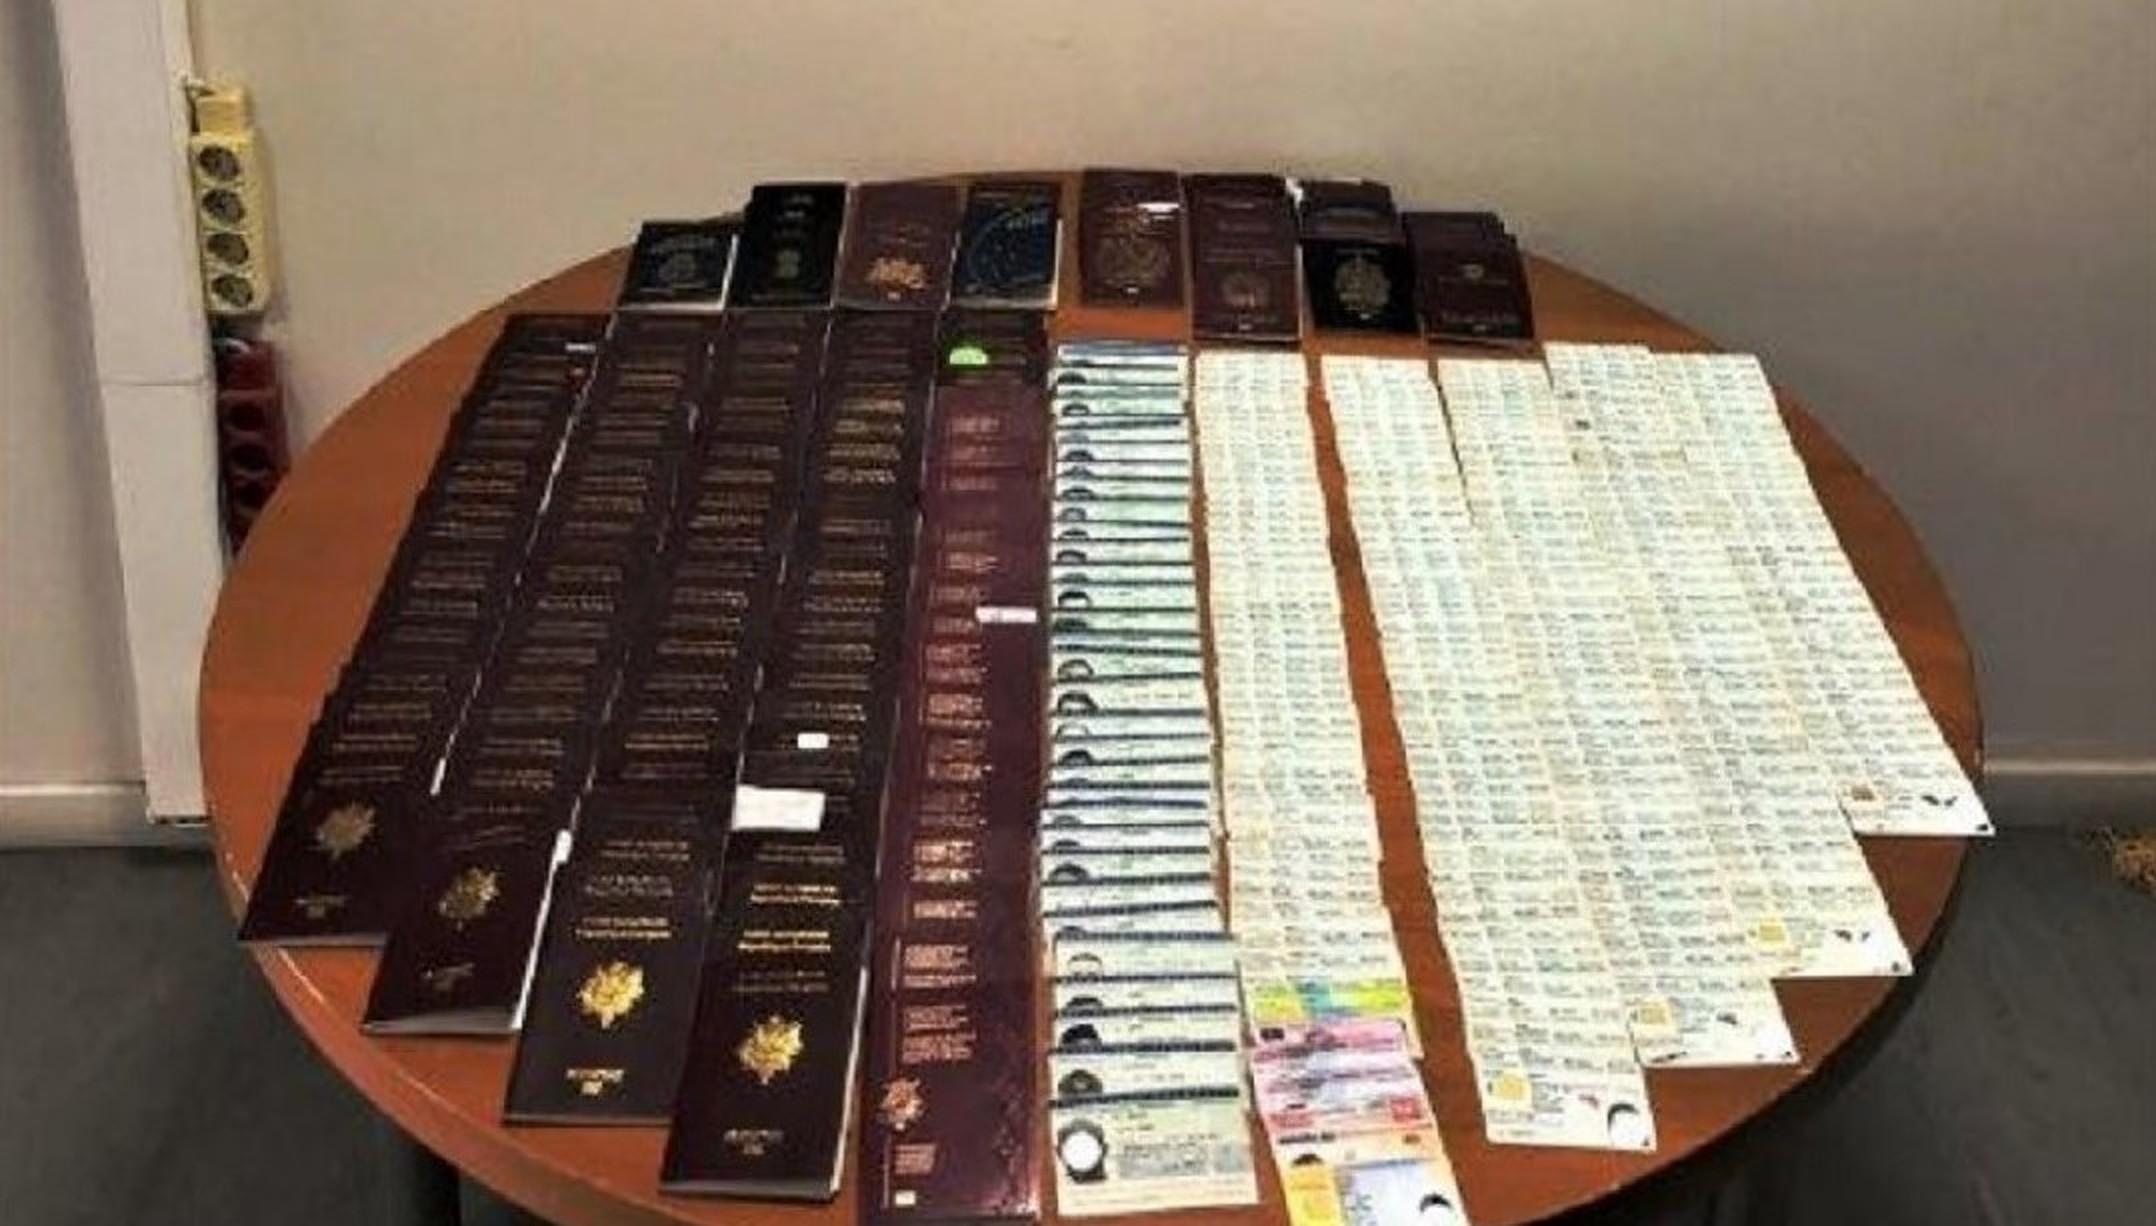 Pașapoartele și cărțile de identitate găsite asupra româncei